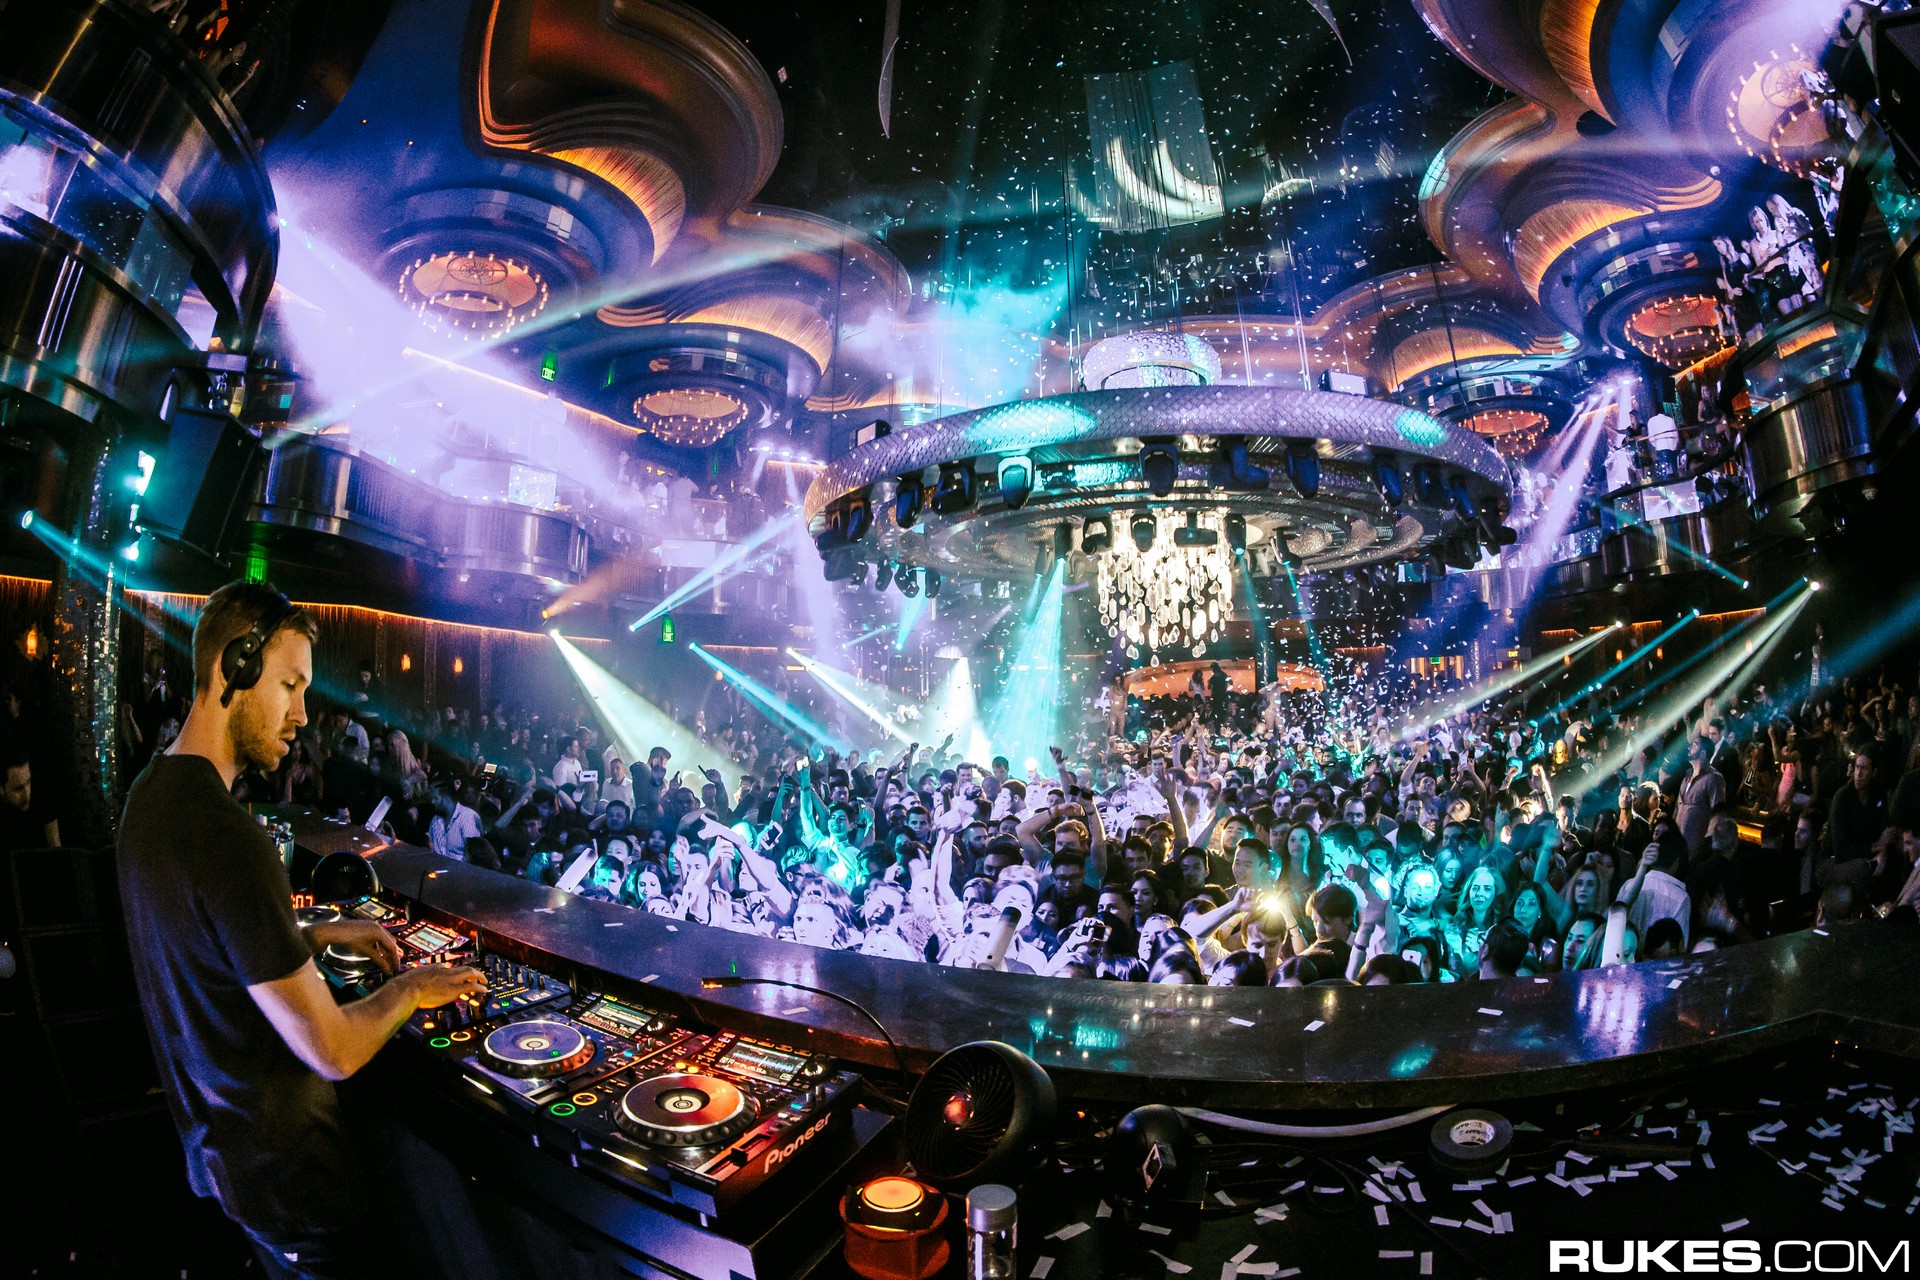 Omnia Nightclub to Host Grand Opening in Las Vegas This Weekend